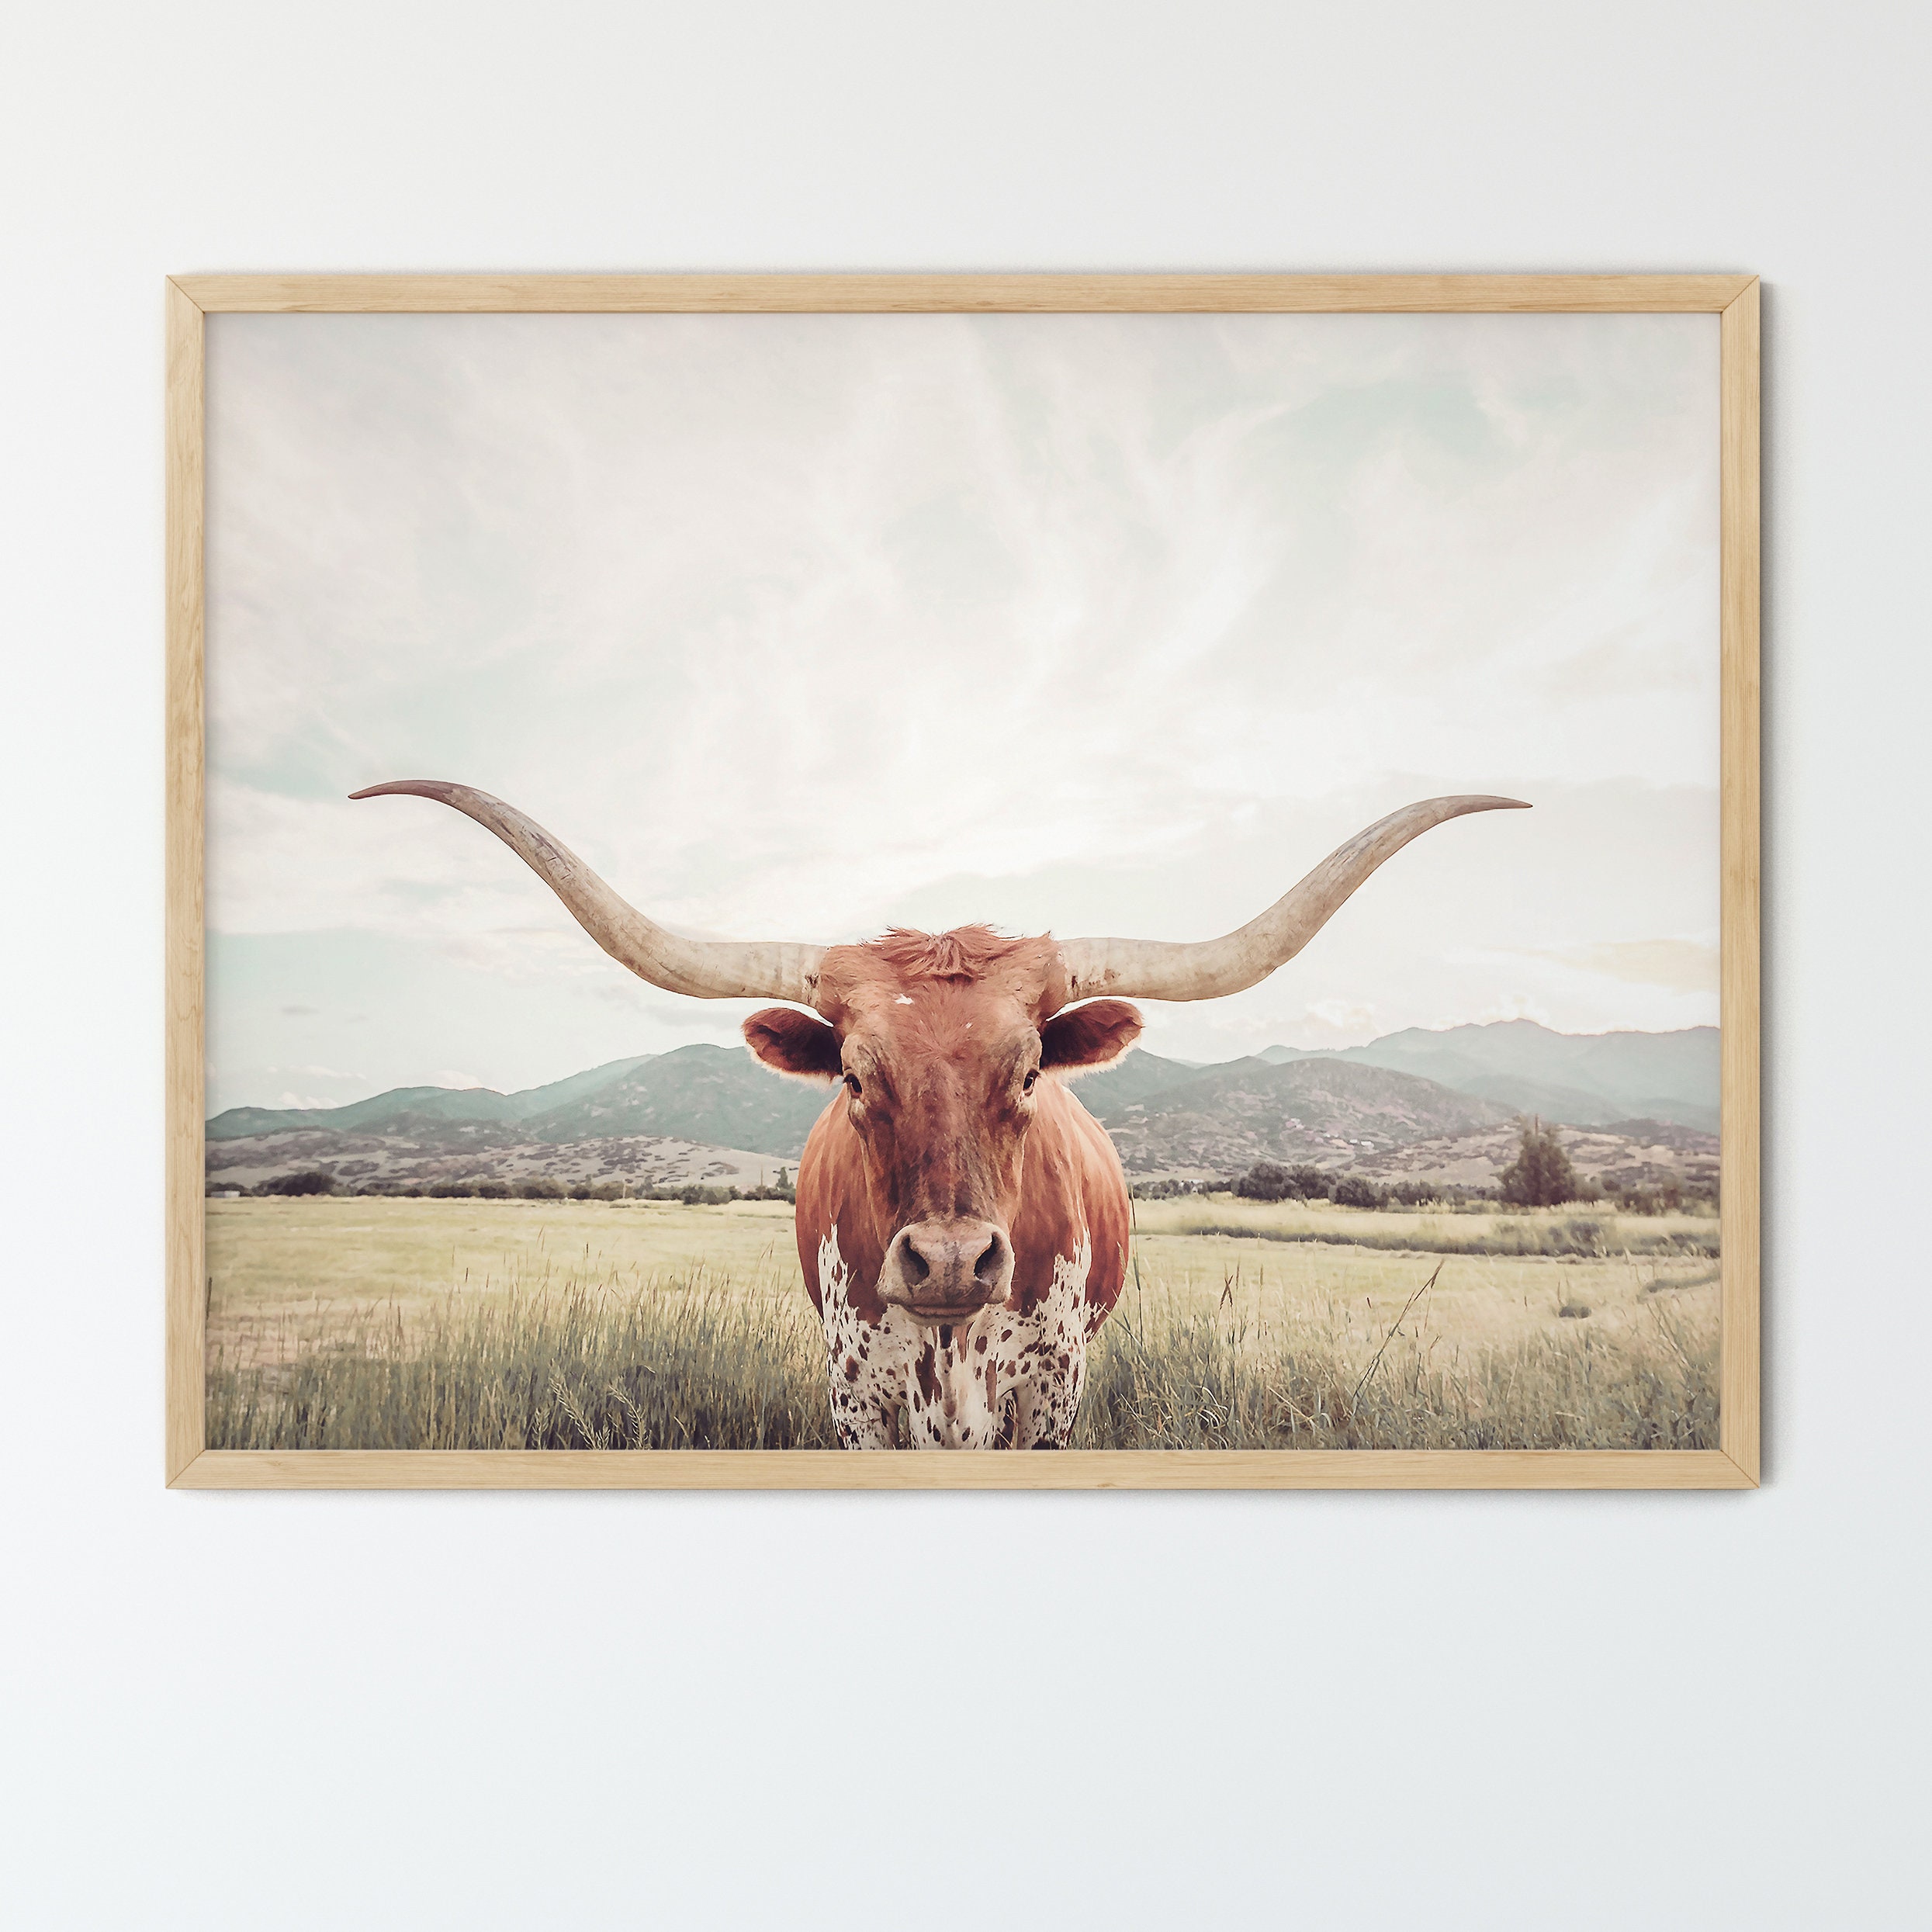 FRAMED Texas Longhorn Cow Print , Unframed & Framed option available.